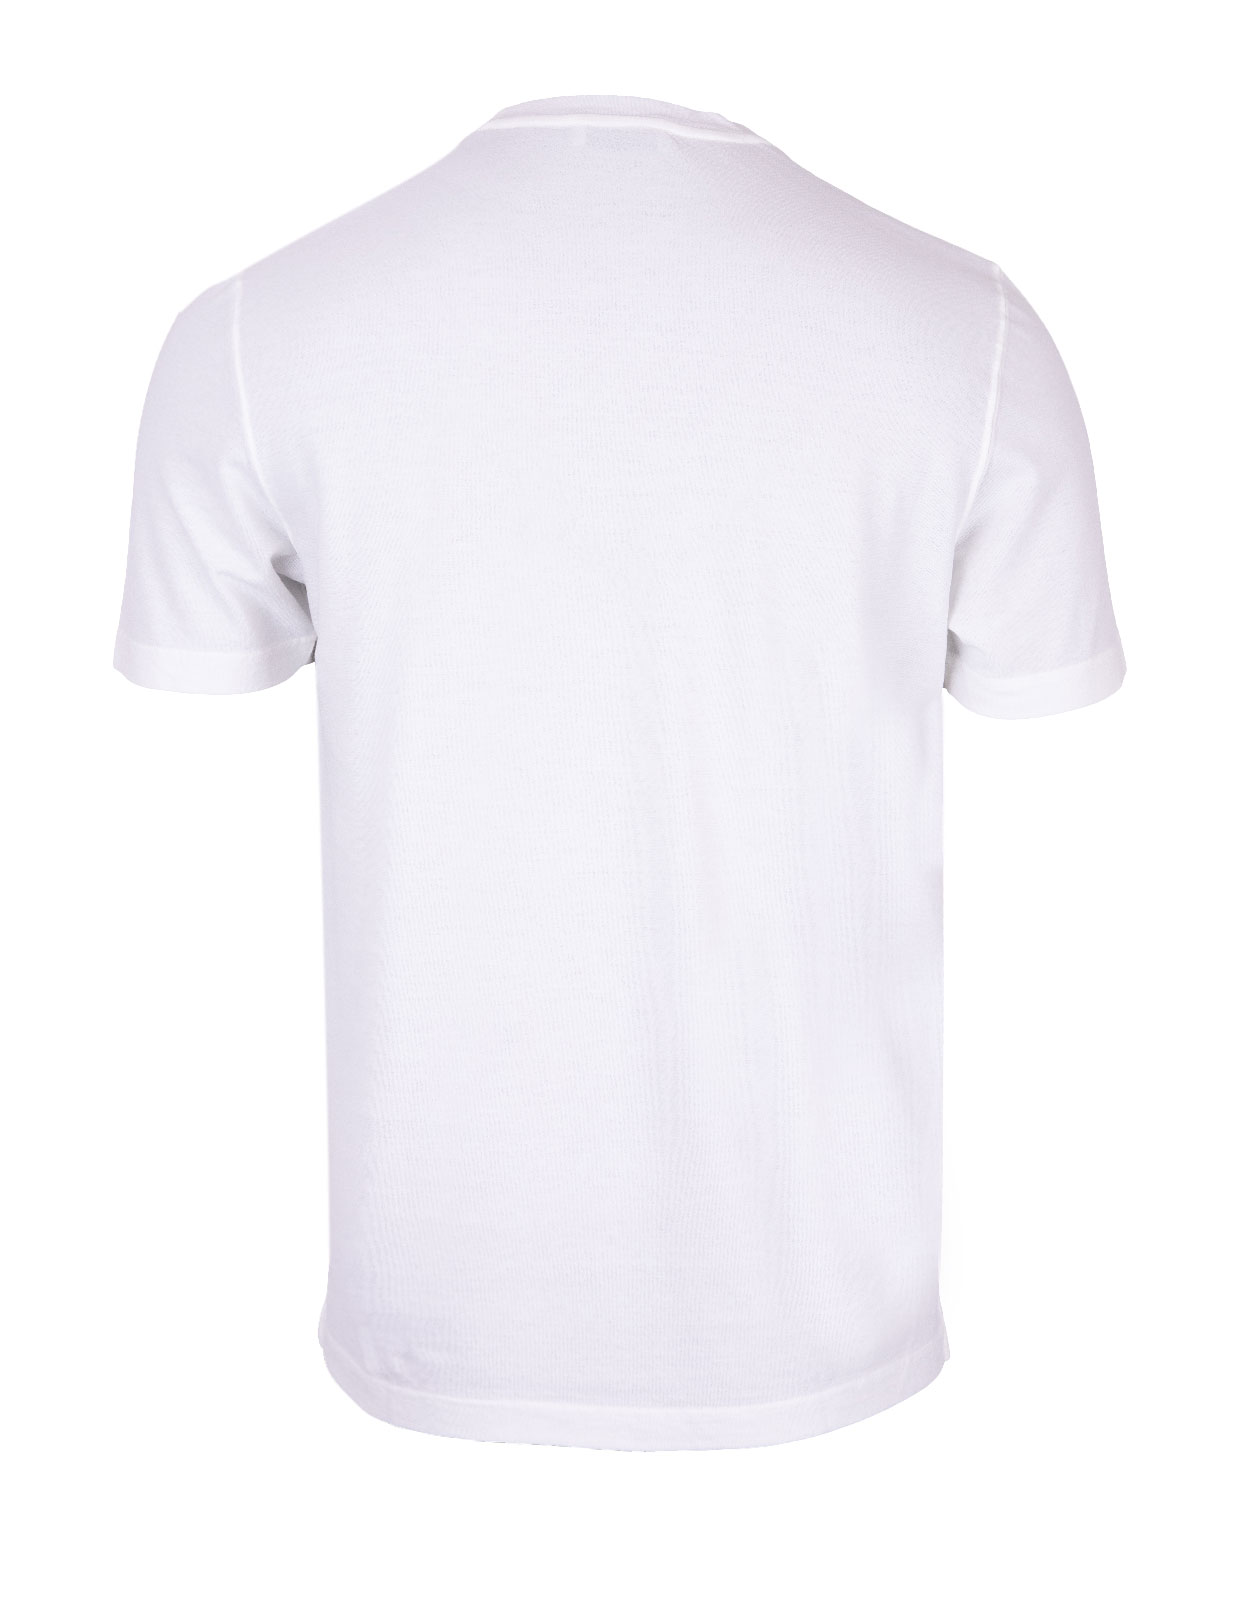 T-shirt Cotton Crew Neck White